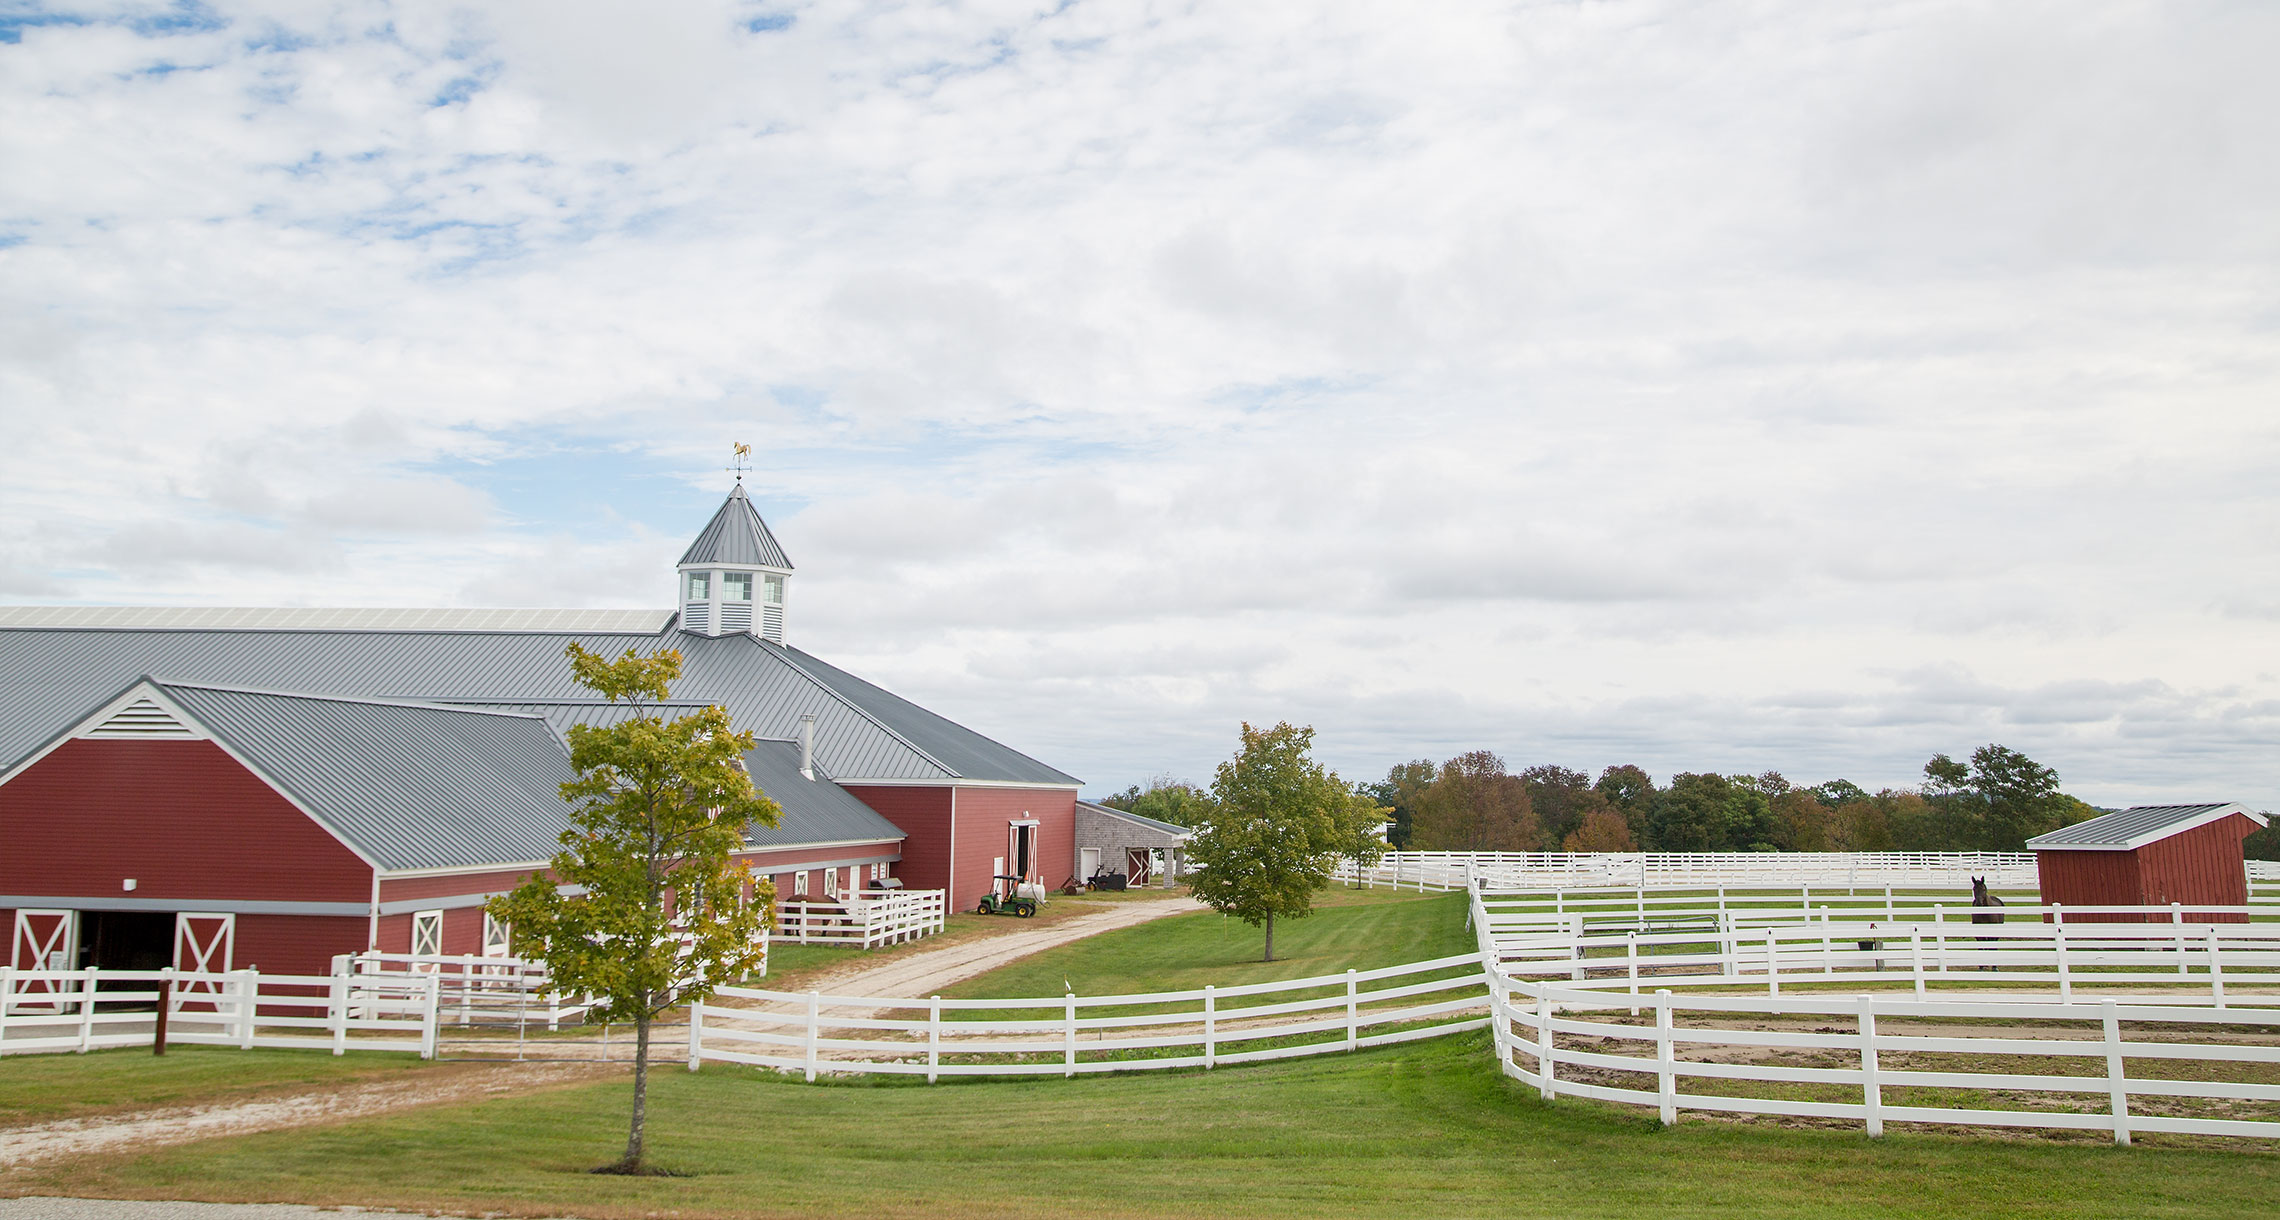 Pineland Farms equestrian center